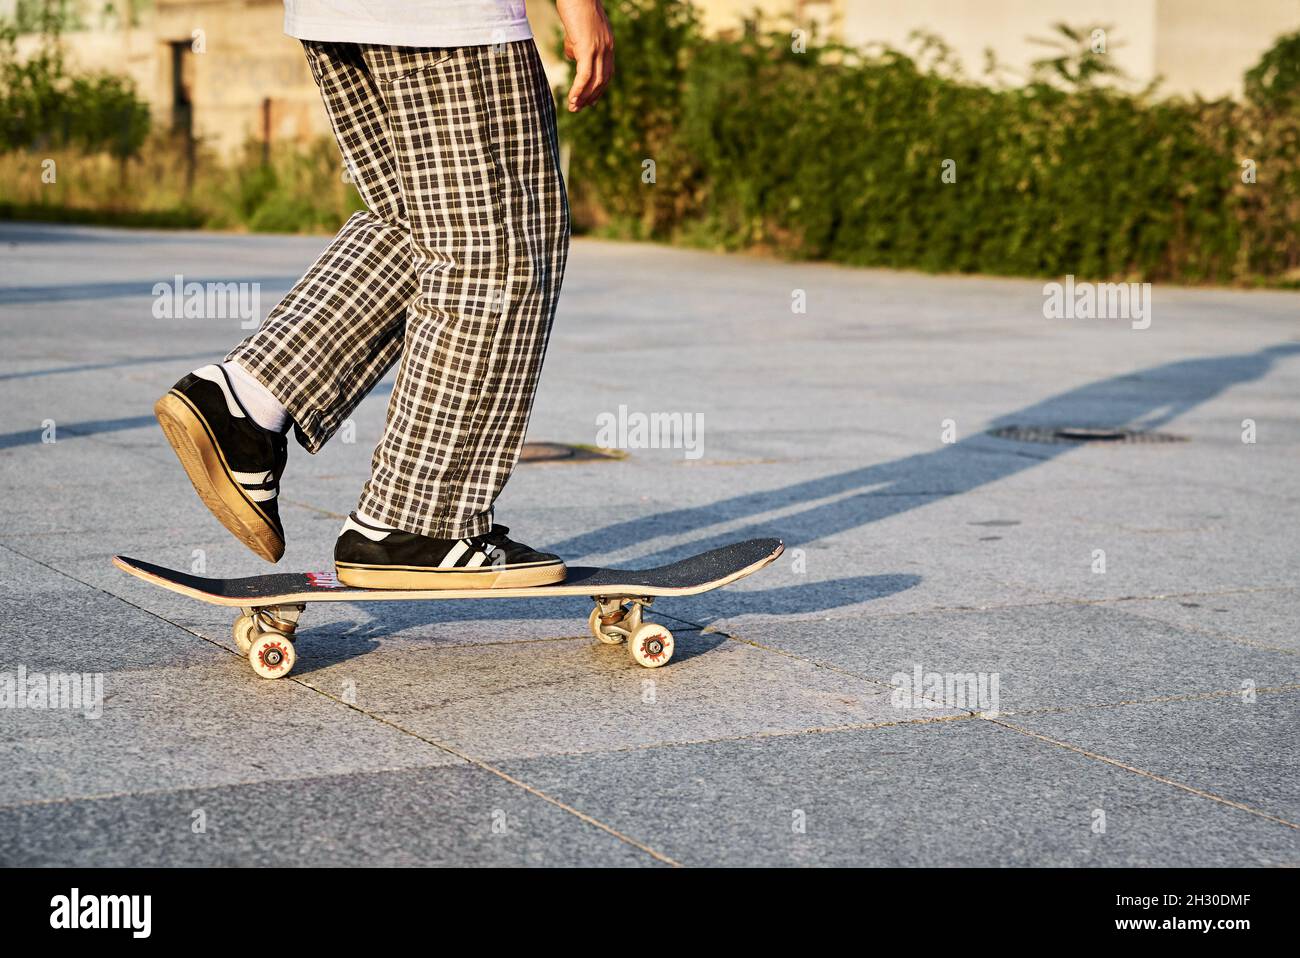 Skateboarder à bord d'une planche à roulettes dans la rue de la ville.  Scrater pratique les tours de skate board au skate Park. Sport extrême  adolescent Photo Stock - Alamy